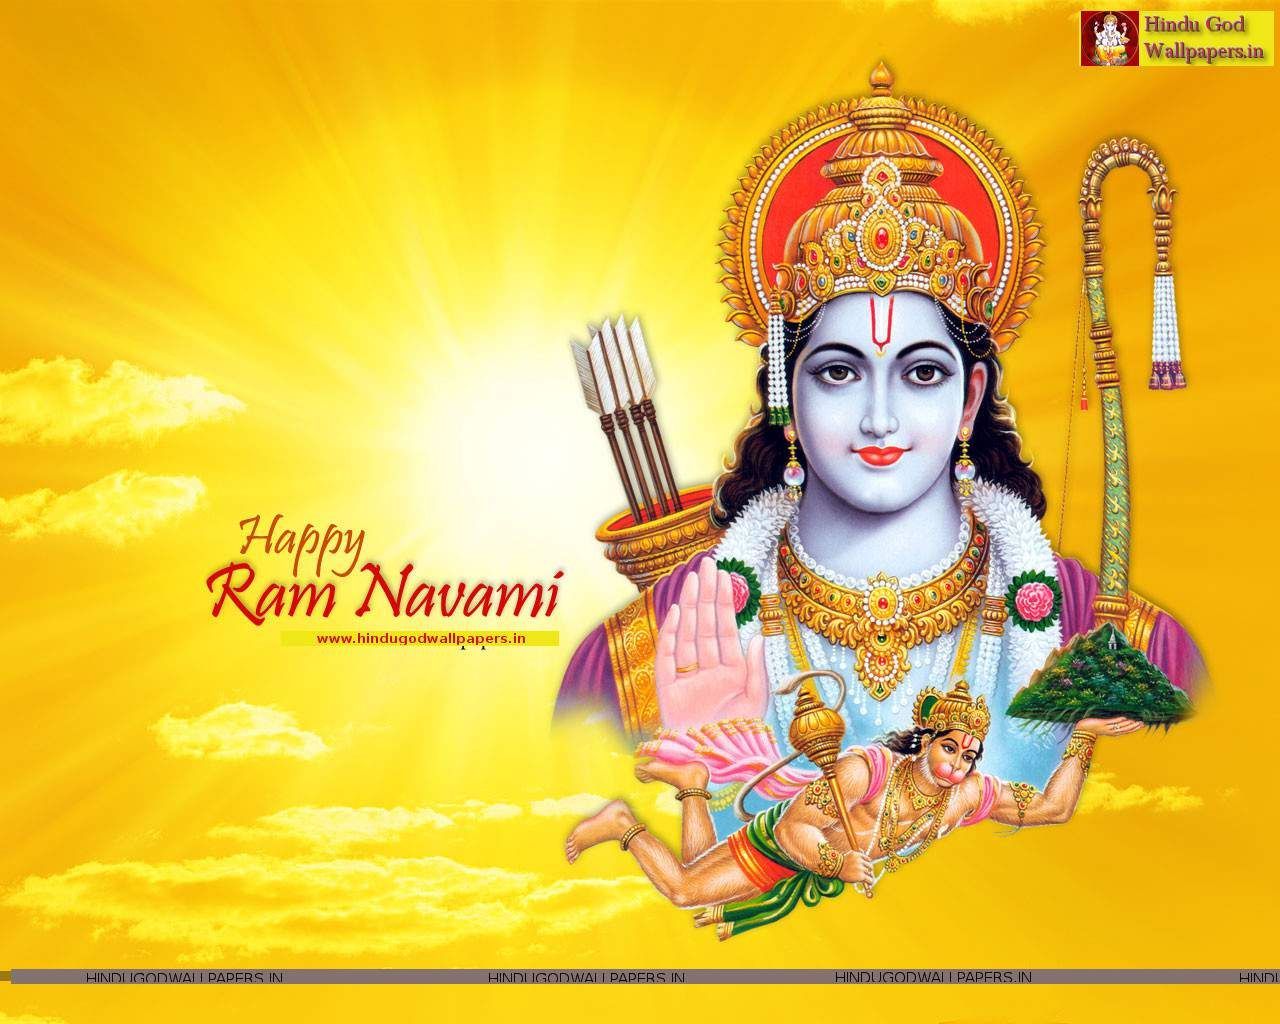 Ram Navami Image. Ram navami image, Happy ram navami, Ram navmi